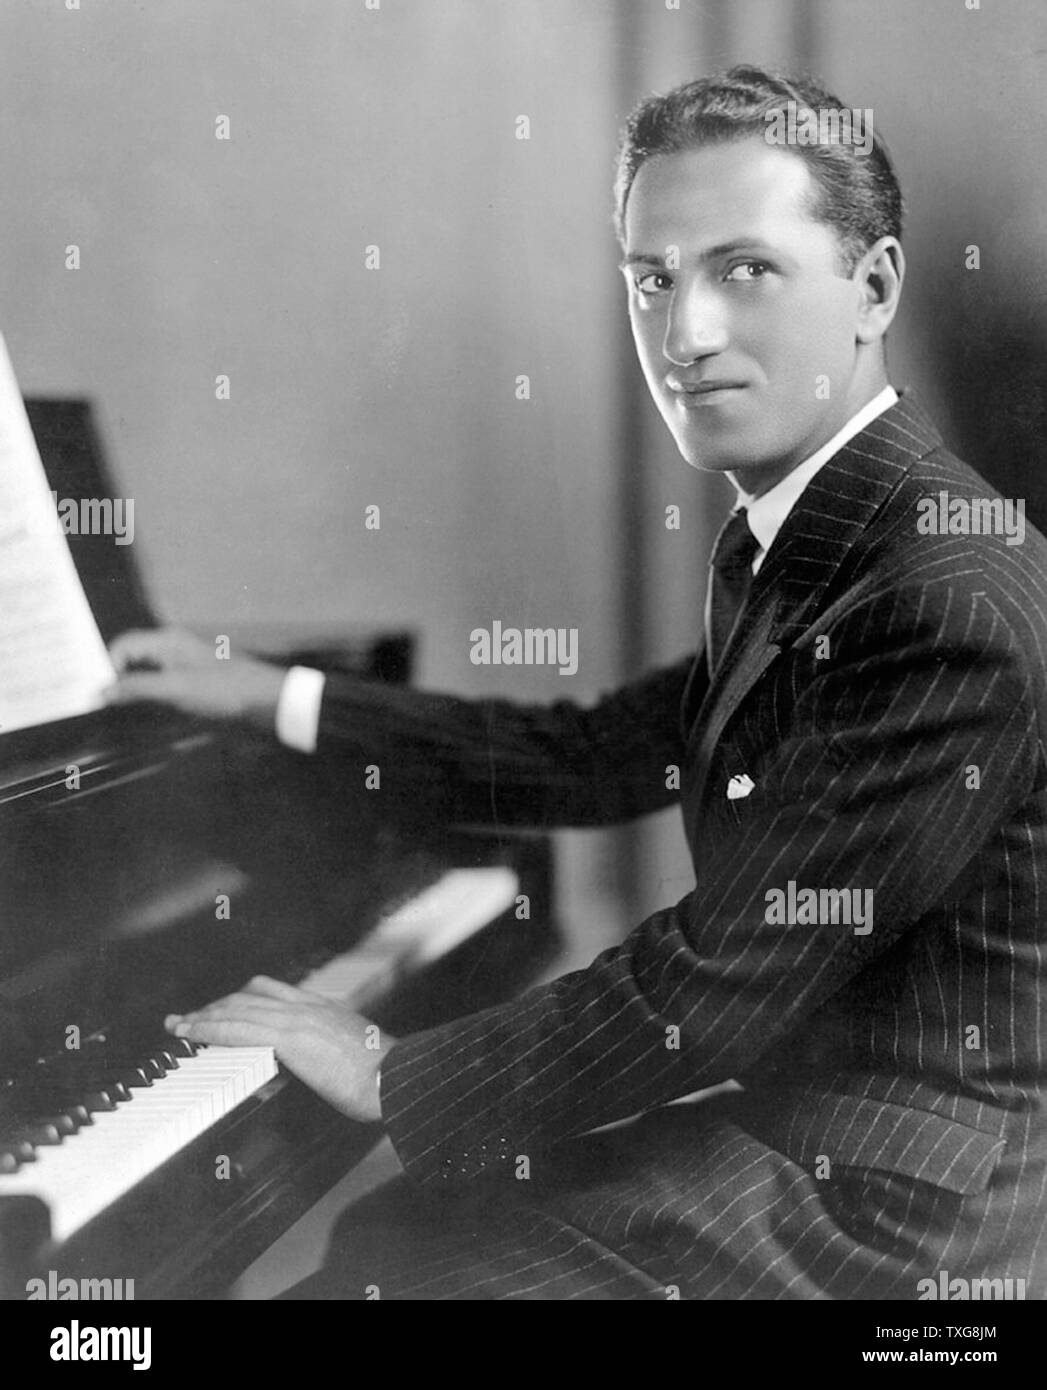 George Gershwin, compositor y pianista estadounidense. Las composiciones de Gershwin abarca ambos géneros clásicos y populares. Él escribió la mayoría de sus vocales y de obras teatrales, incluyendo más de una docena de espectáculos de Broadway Foto de stock